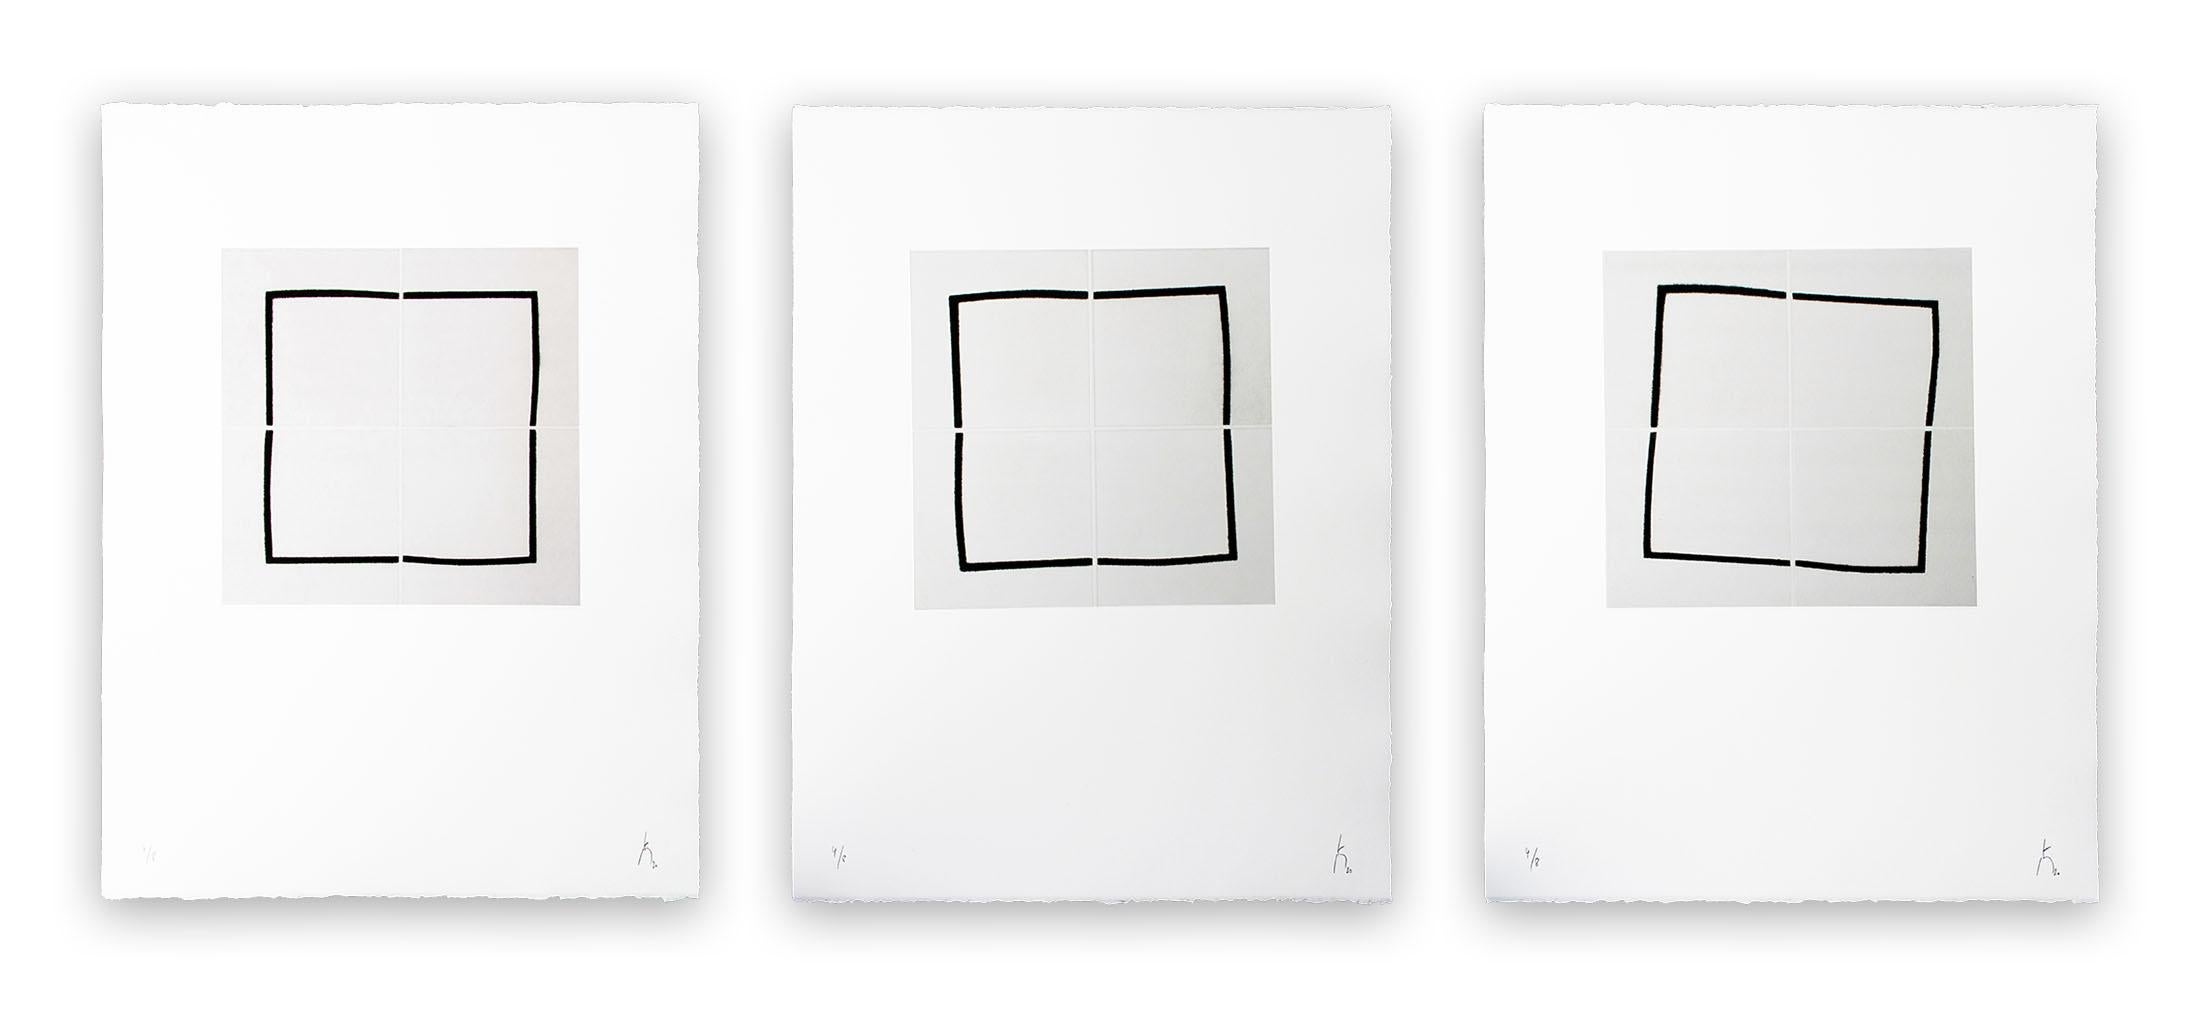 Pierre Muckensturm Abstract Print – 202R0671 ABC (Abstrakter Druck)